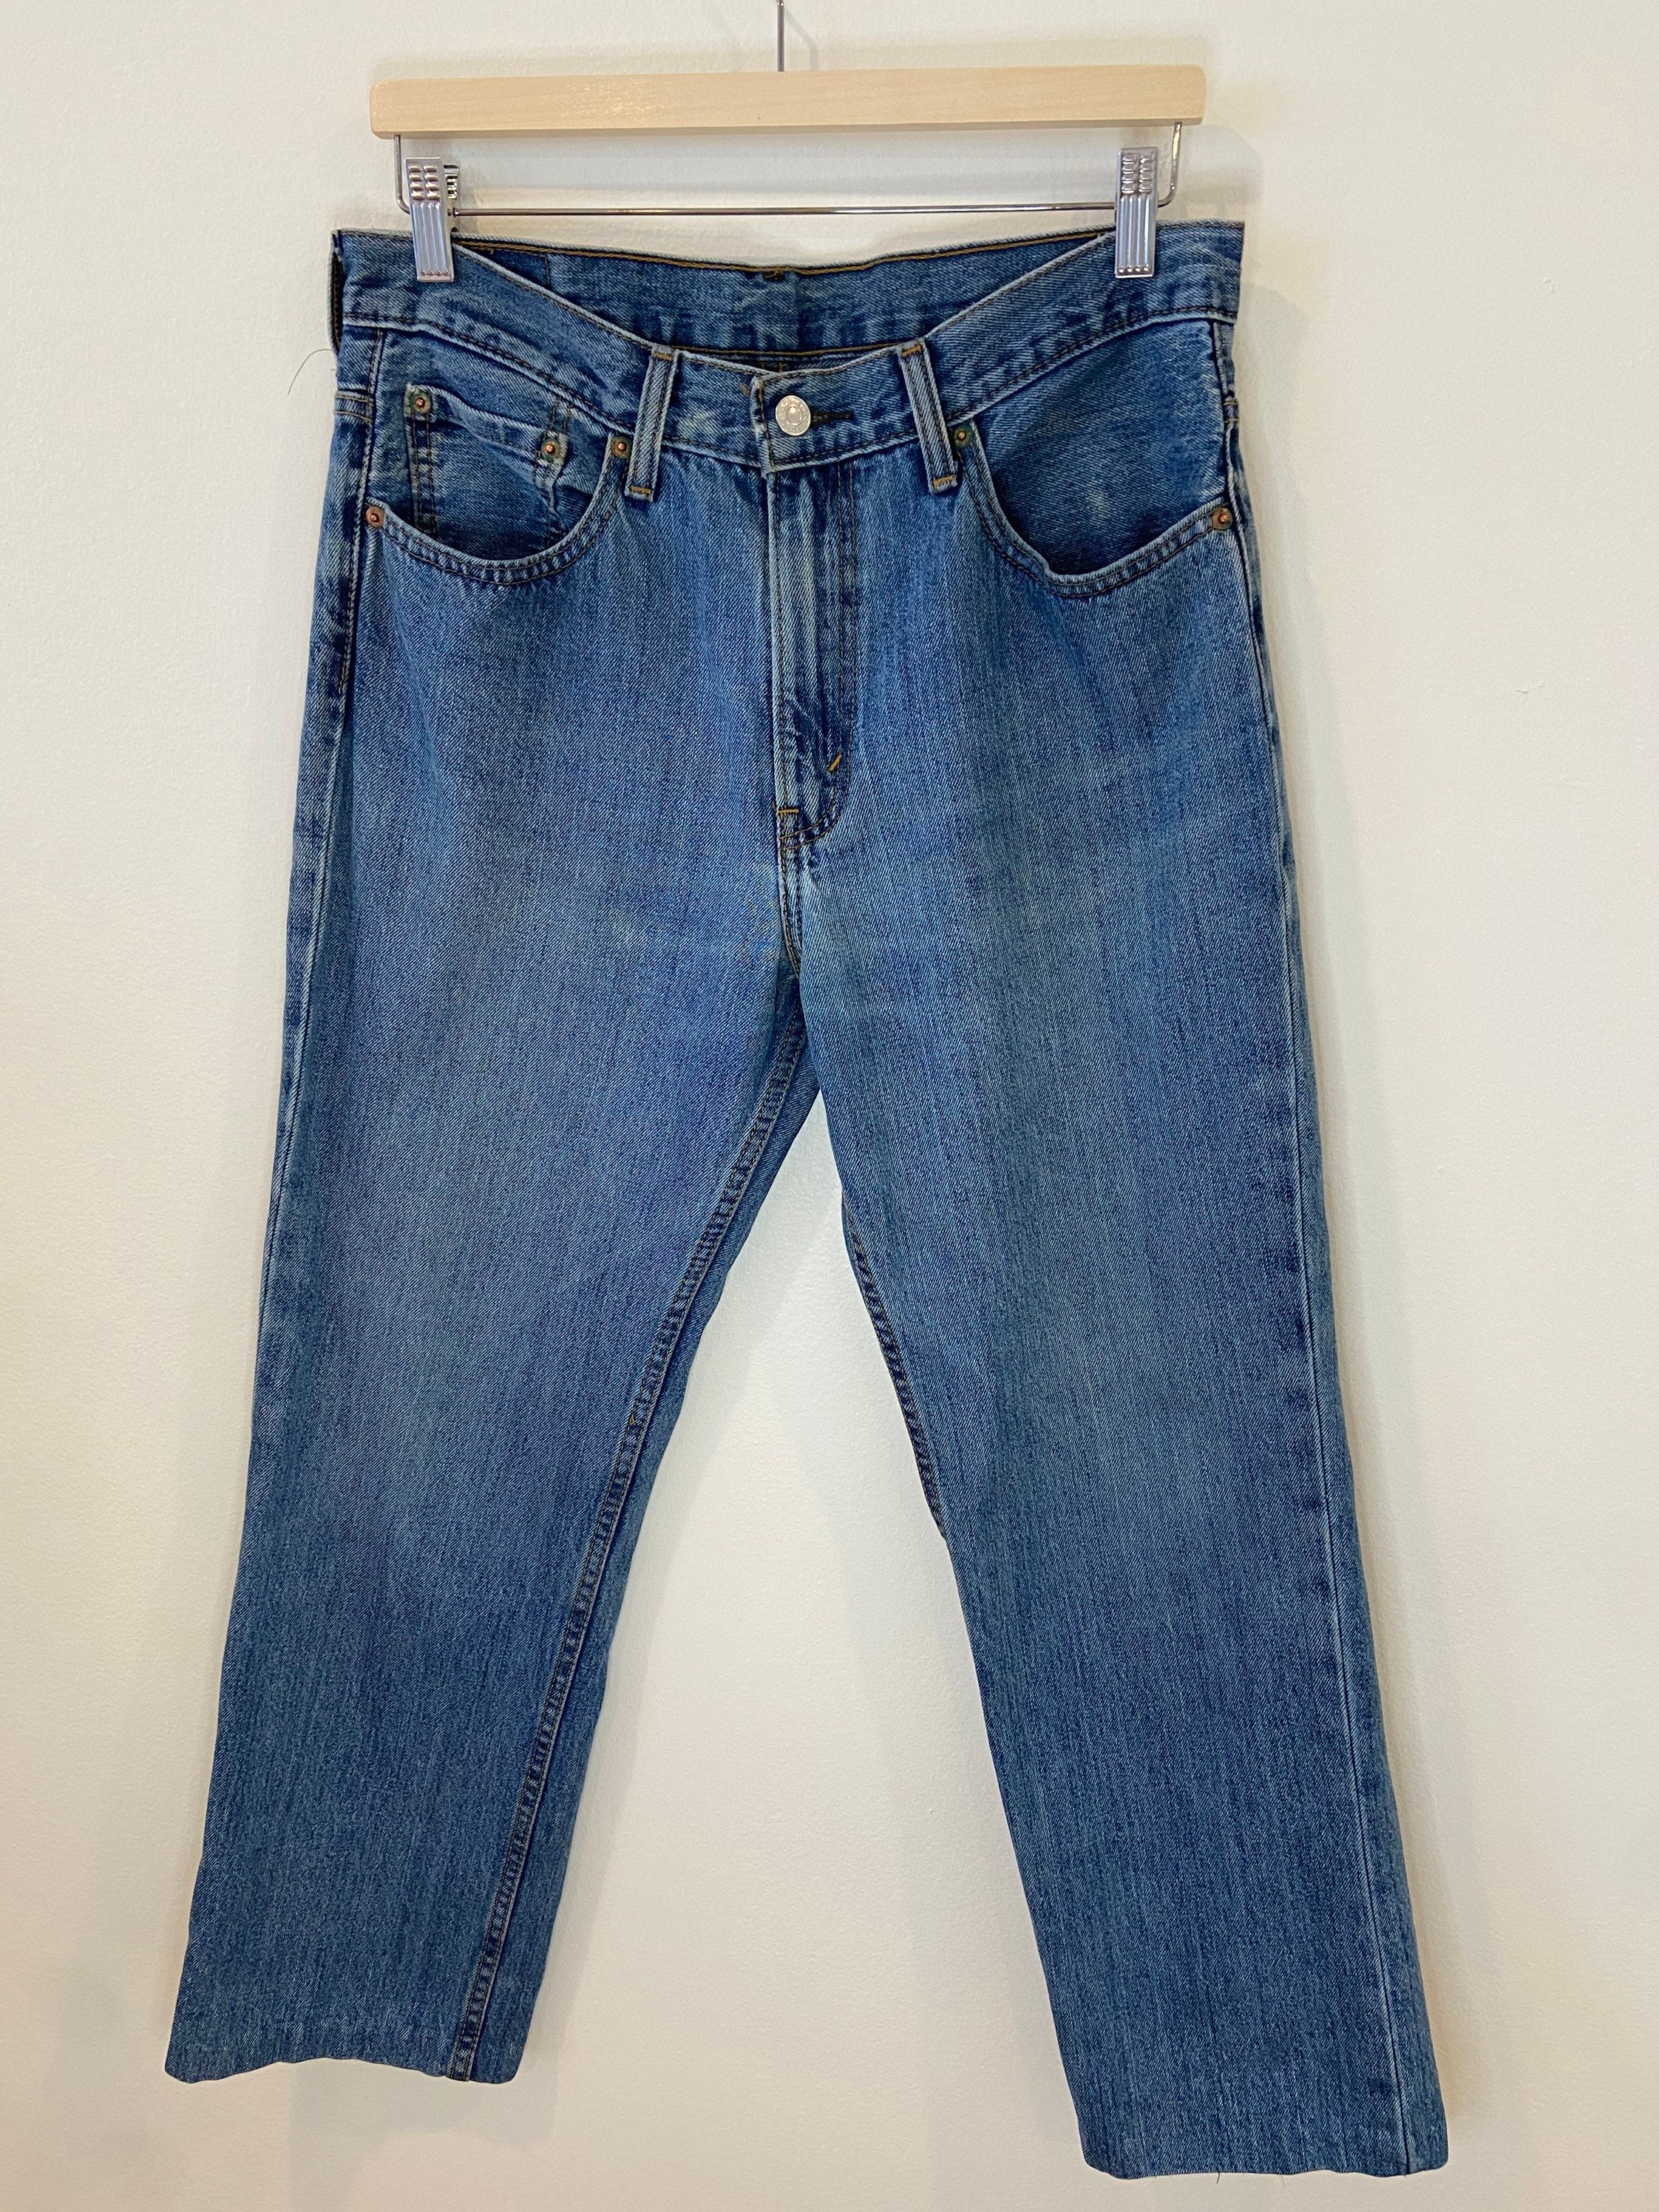 Vintage Levis 516 Jeans Size W34 L30 Vintage Jeans Denim - Etsy Australia